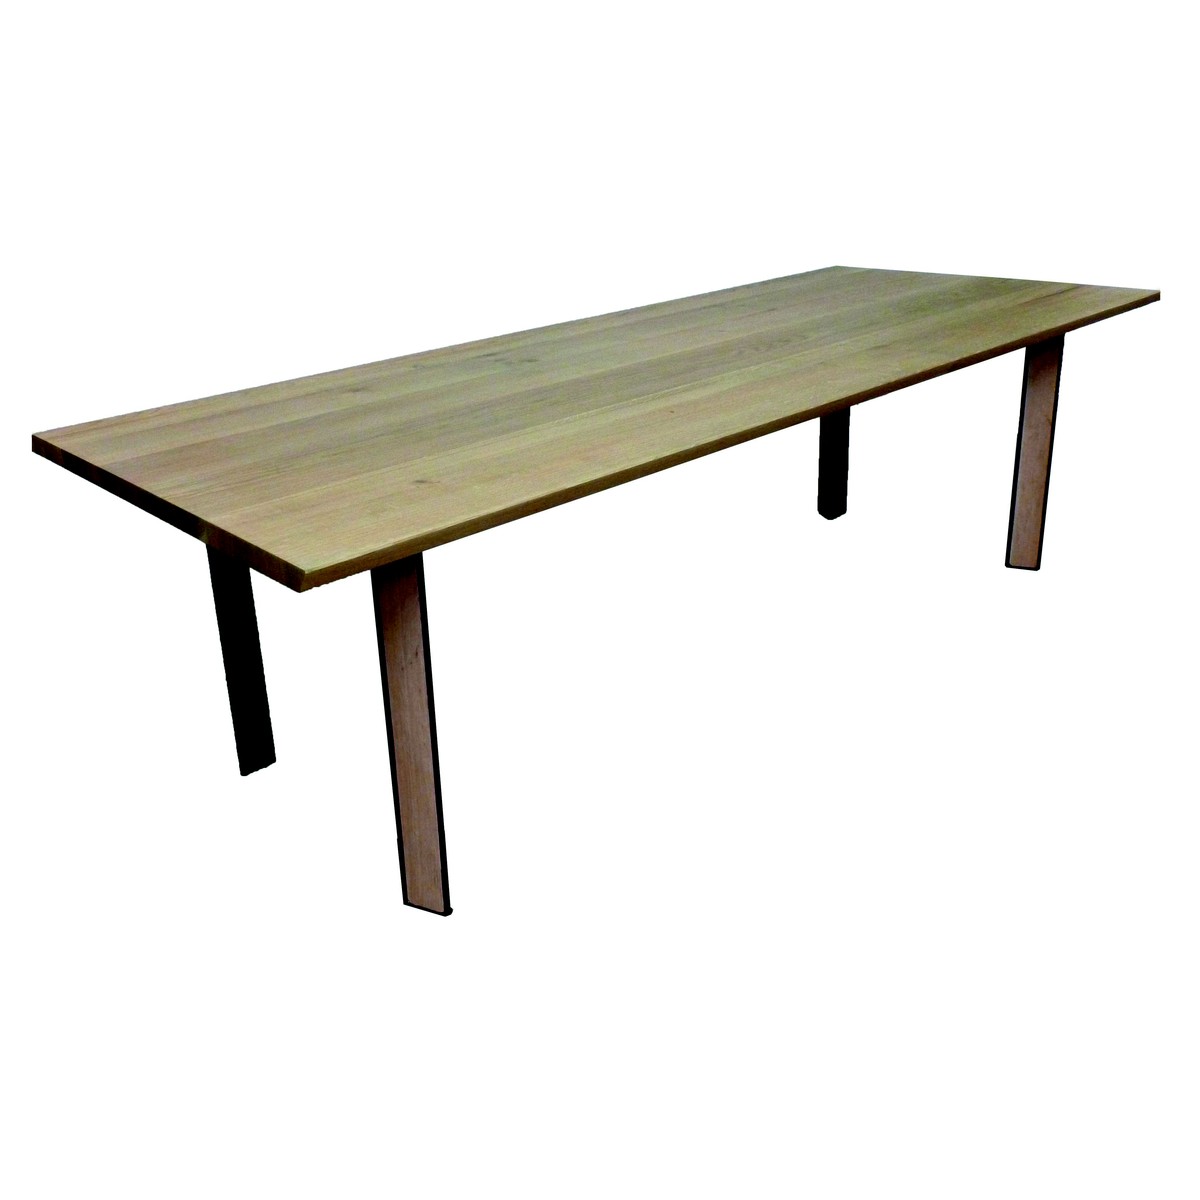   Table Duco Droit rectangulaire  160x100x77cm